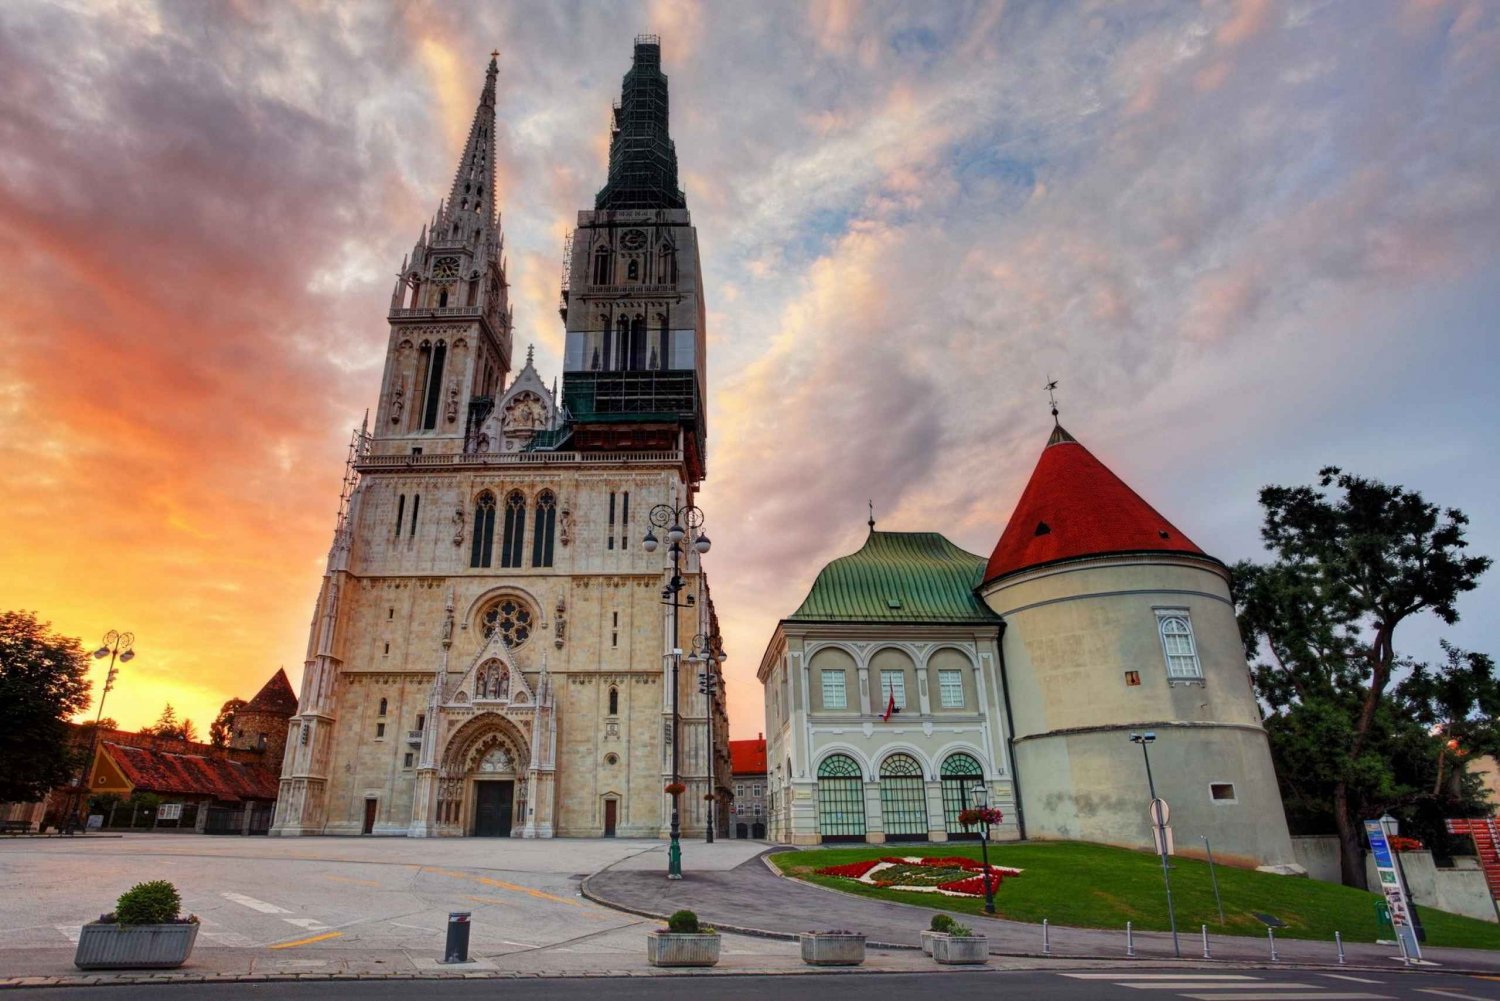 Zagreb Big tour - yksityinen kiertoajelu